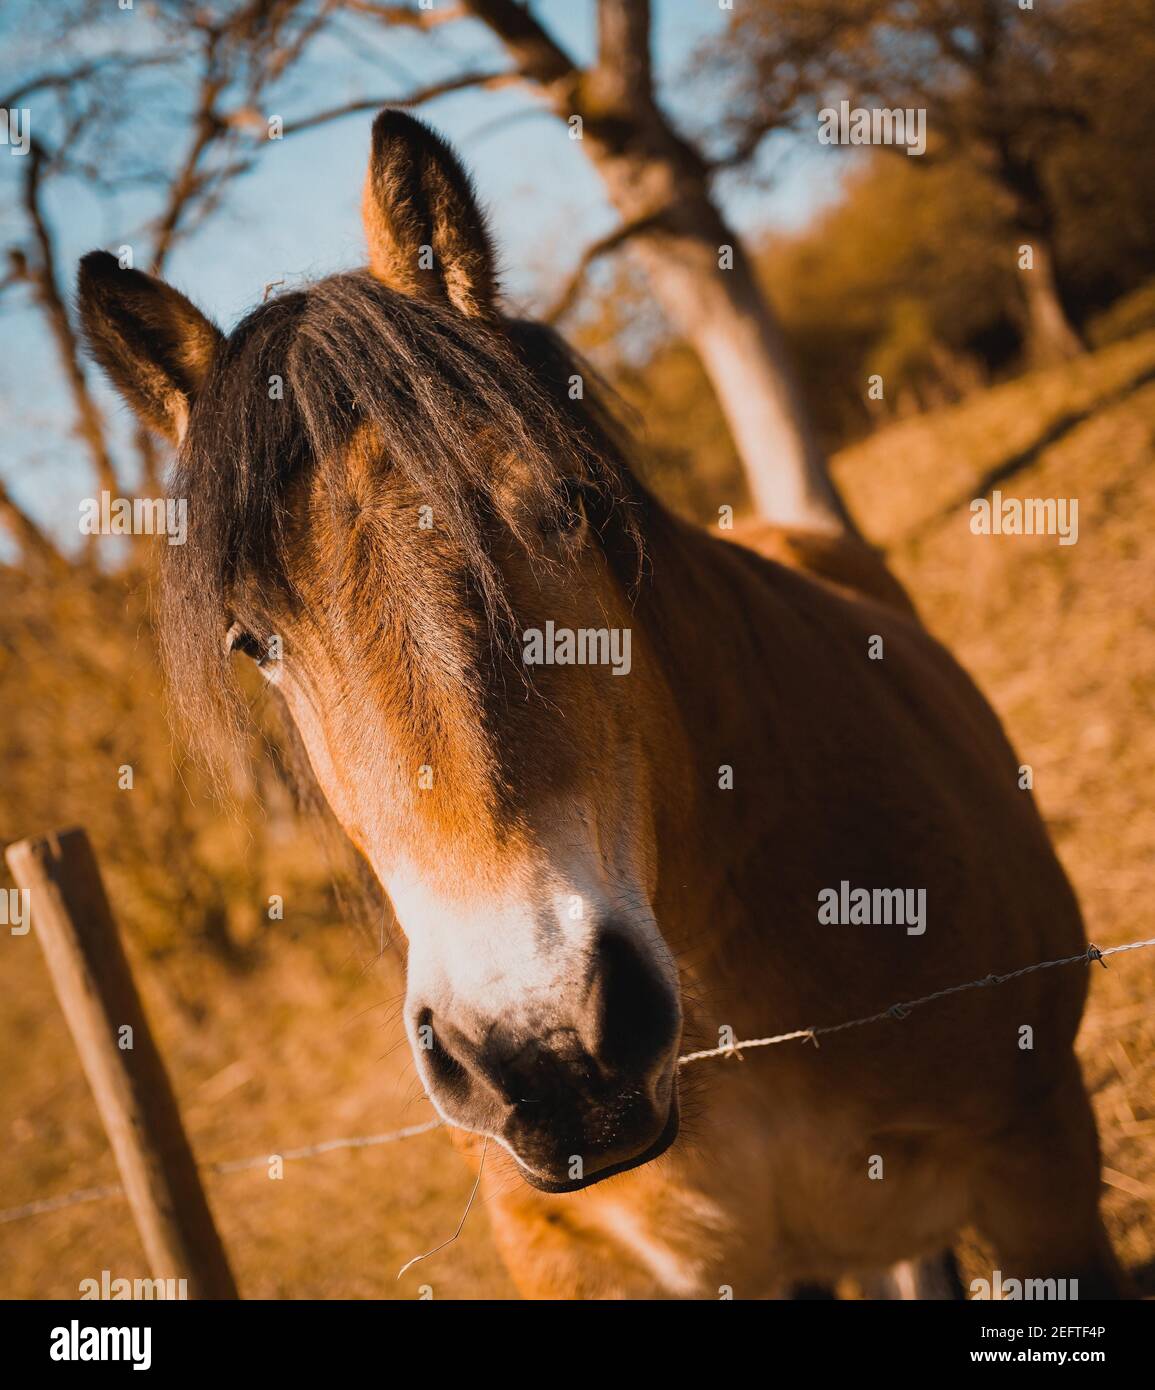 Nahaufnahme eines braunen Pferdes mit dem Gesicht über einem Stacheldraht Zaun Stockfoto